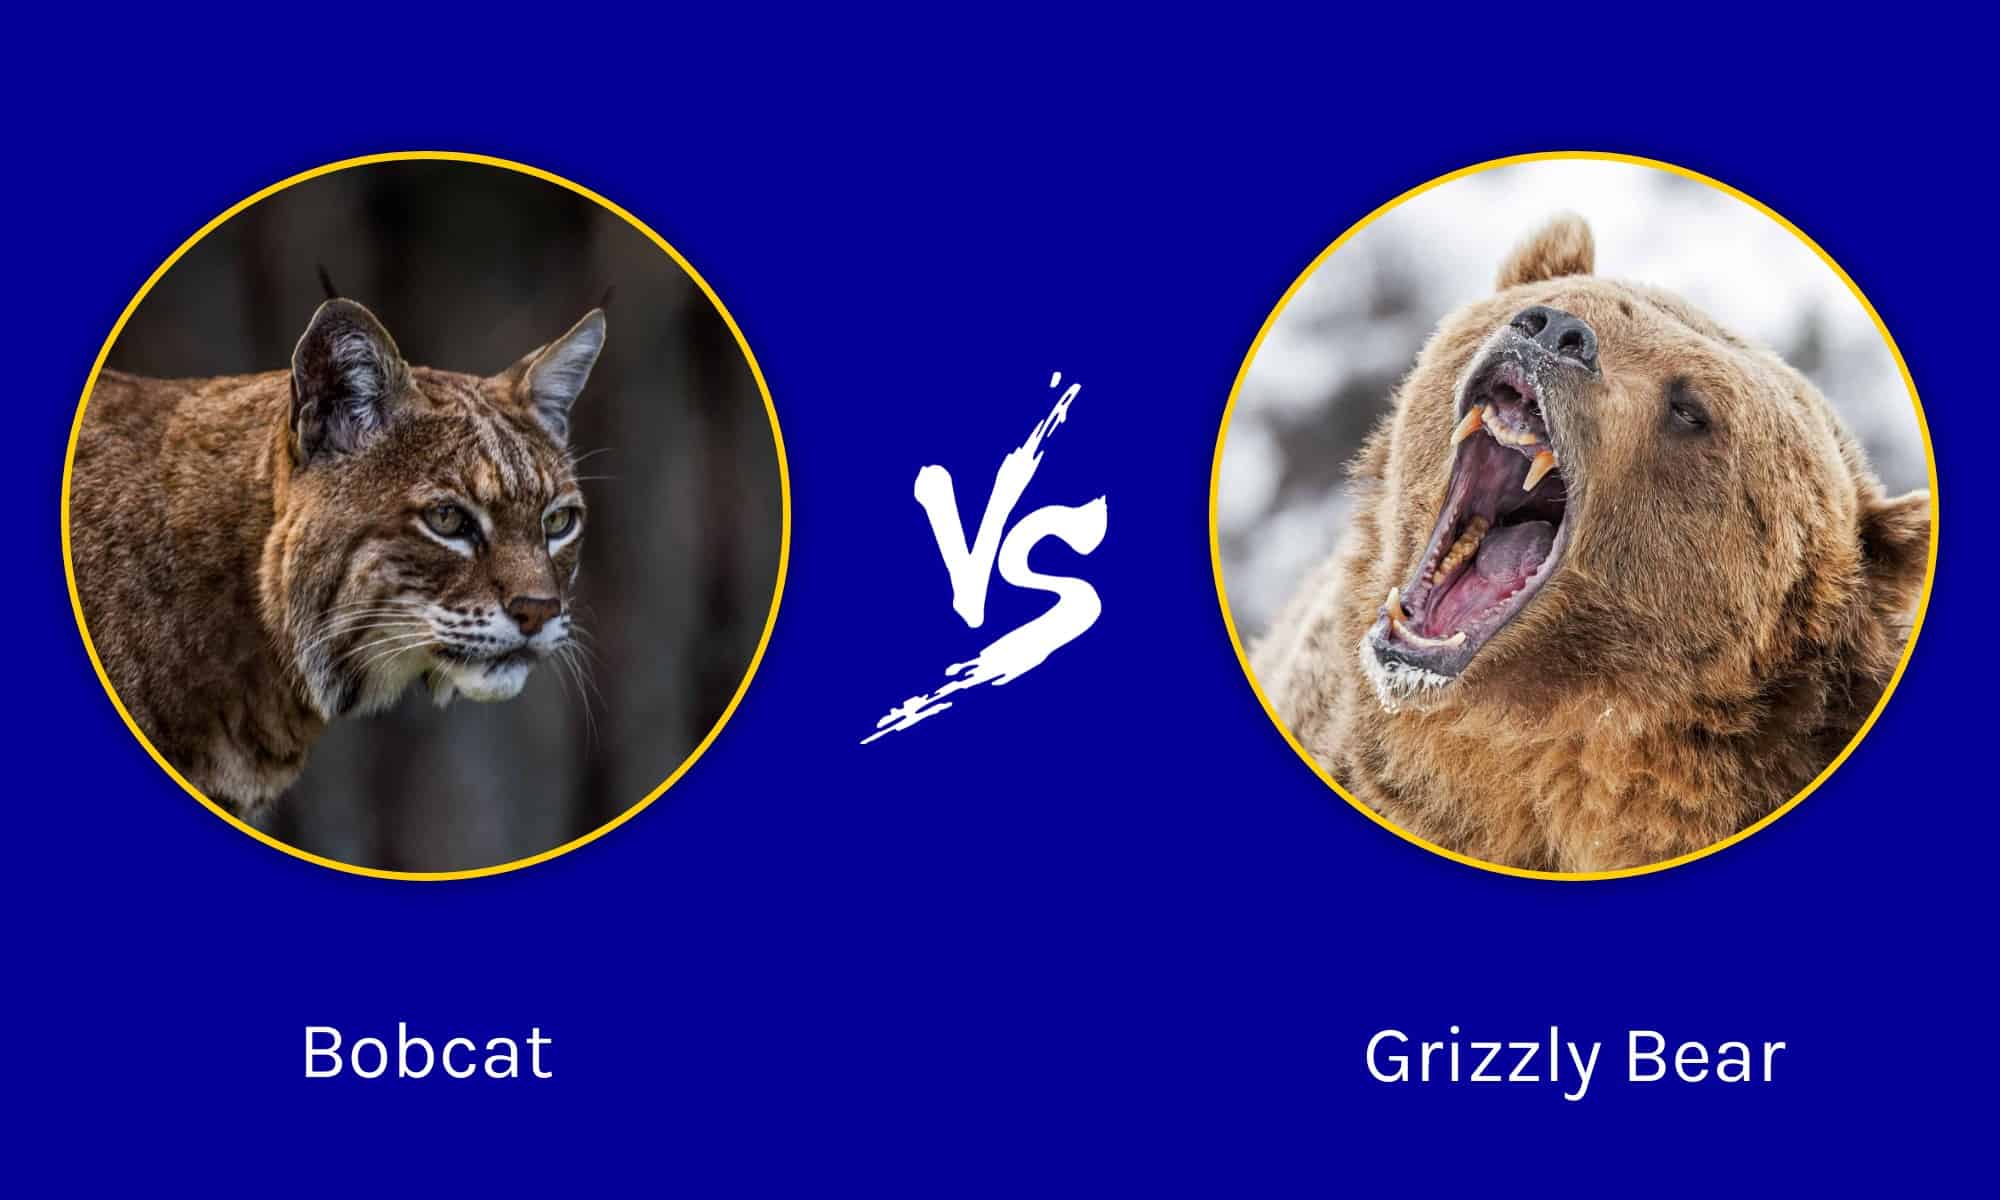 epic-battles-5-bobcats-vs-a-grizzly-bear-az-animals